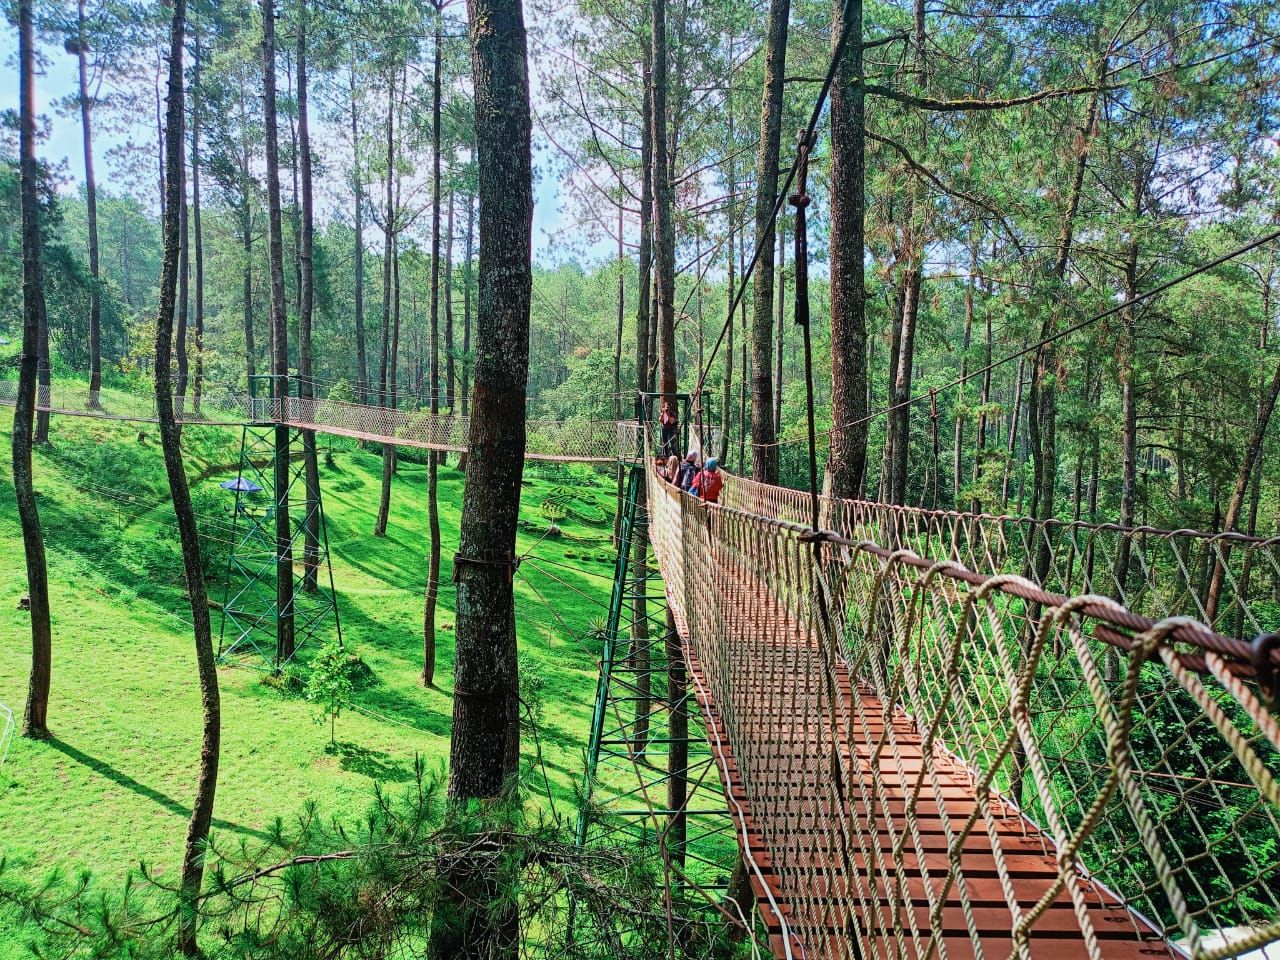 Wisata Menantang di Wood Bridge Orchid Forest Bandung, Cek Lokasi, Harga Tiket dan Jam Buka